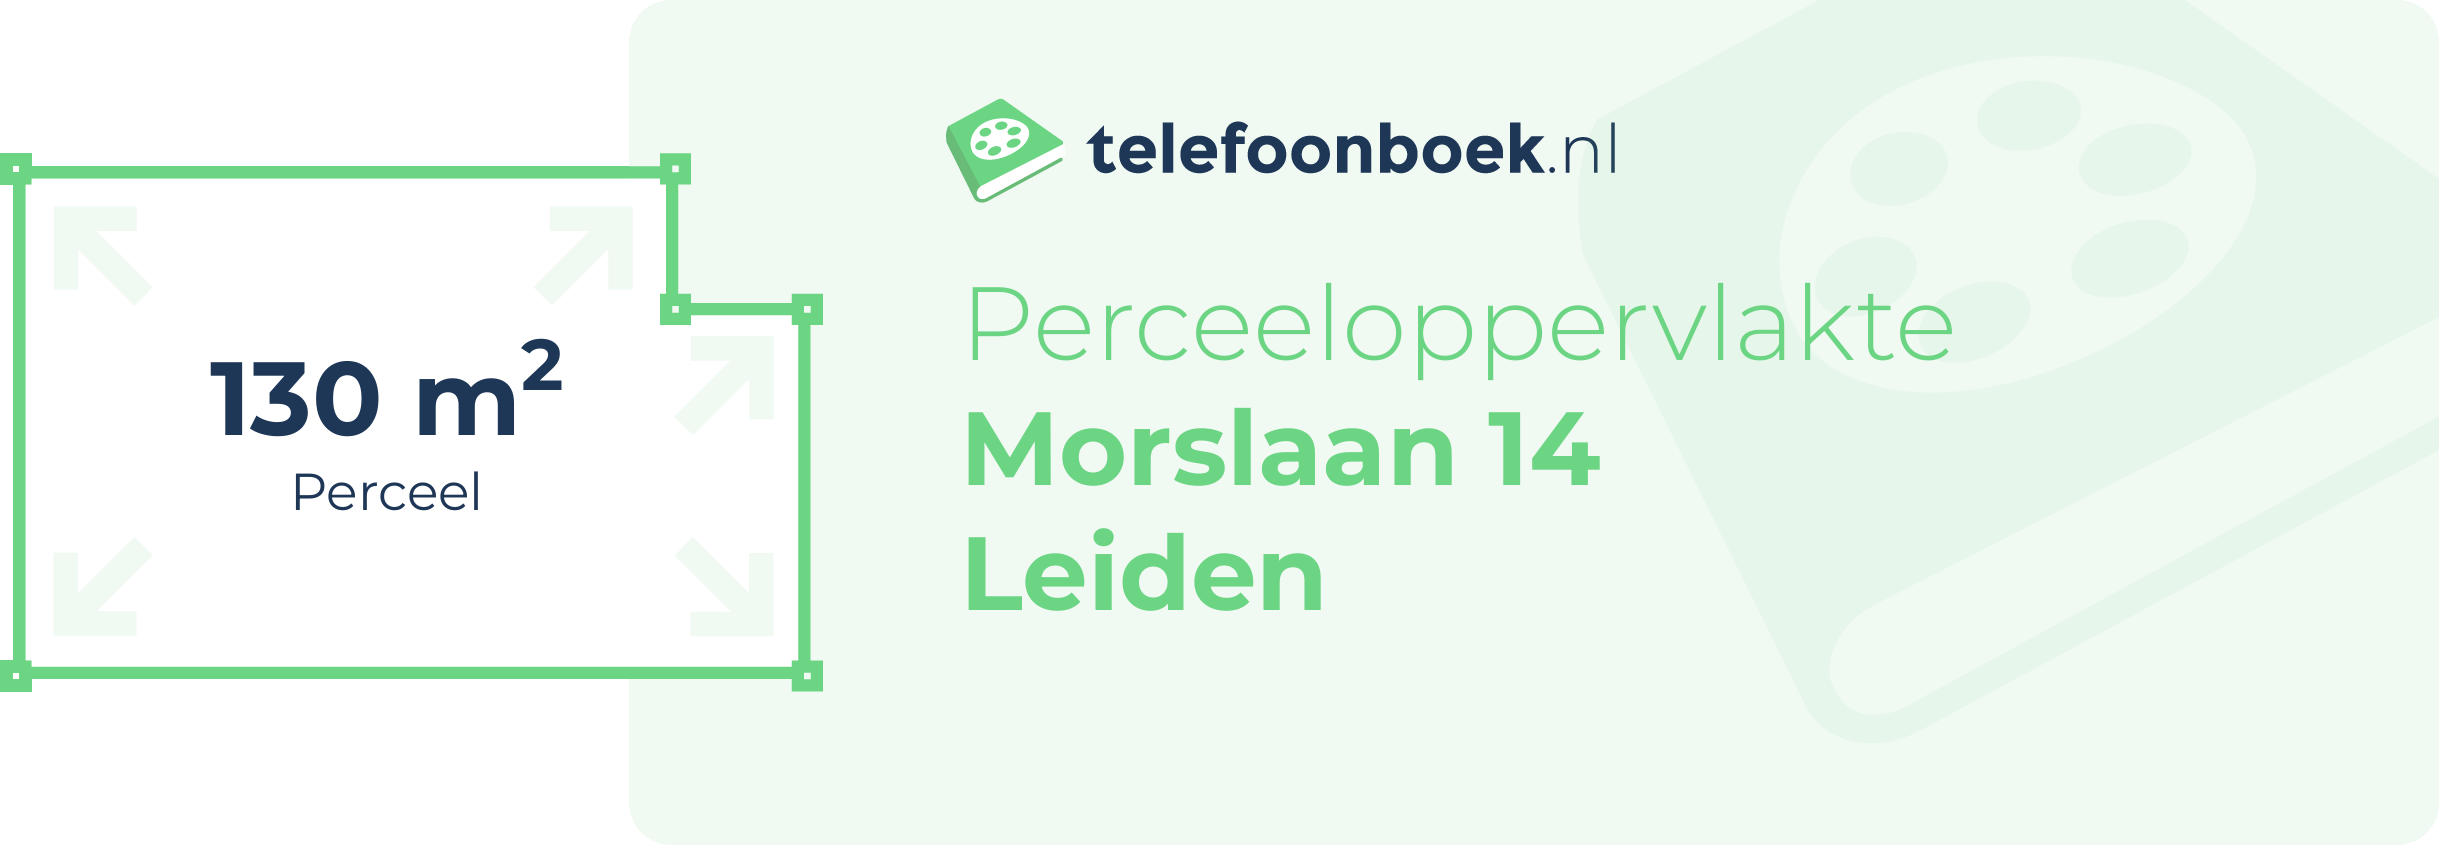 Perceeloppervlakte Morslaan 14 Leiden